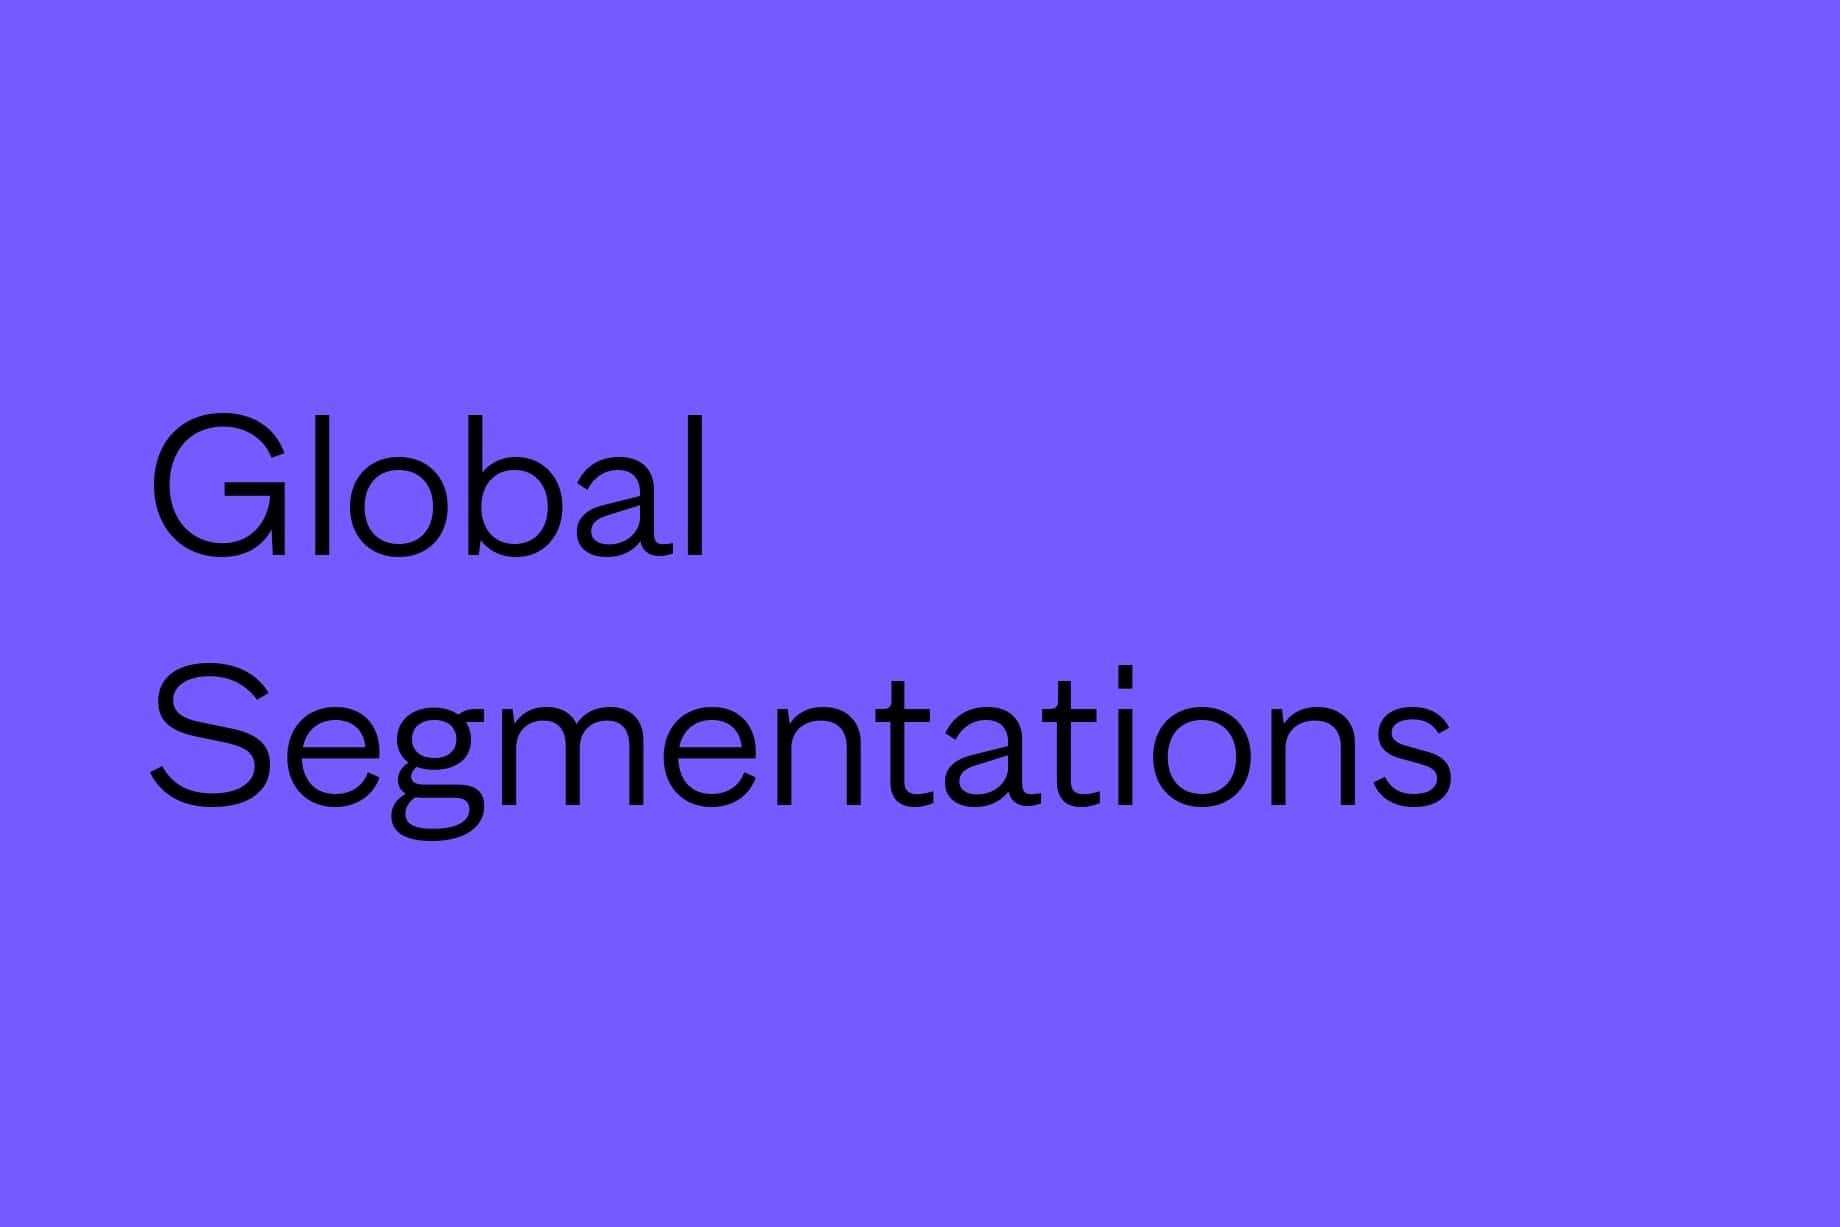 9 Traits of Winning Global Segmentations